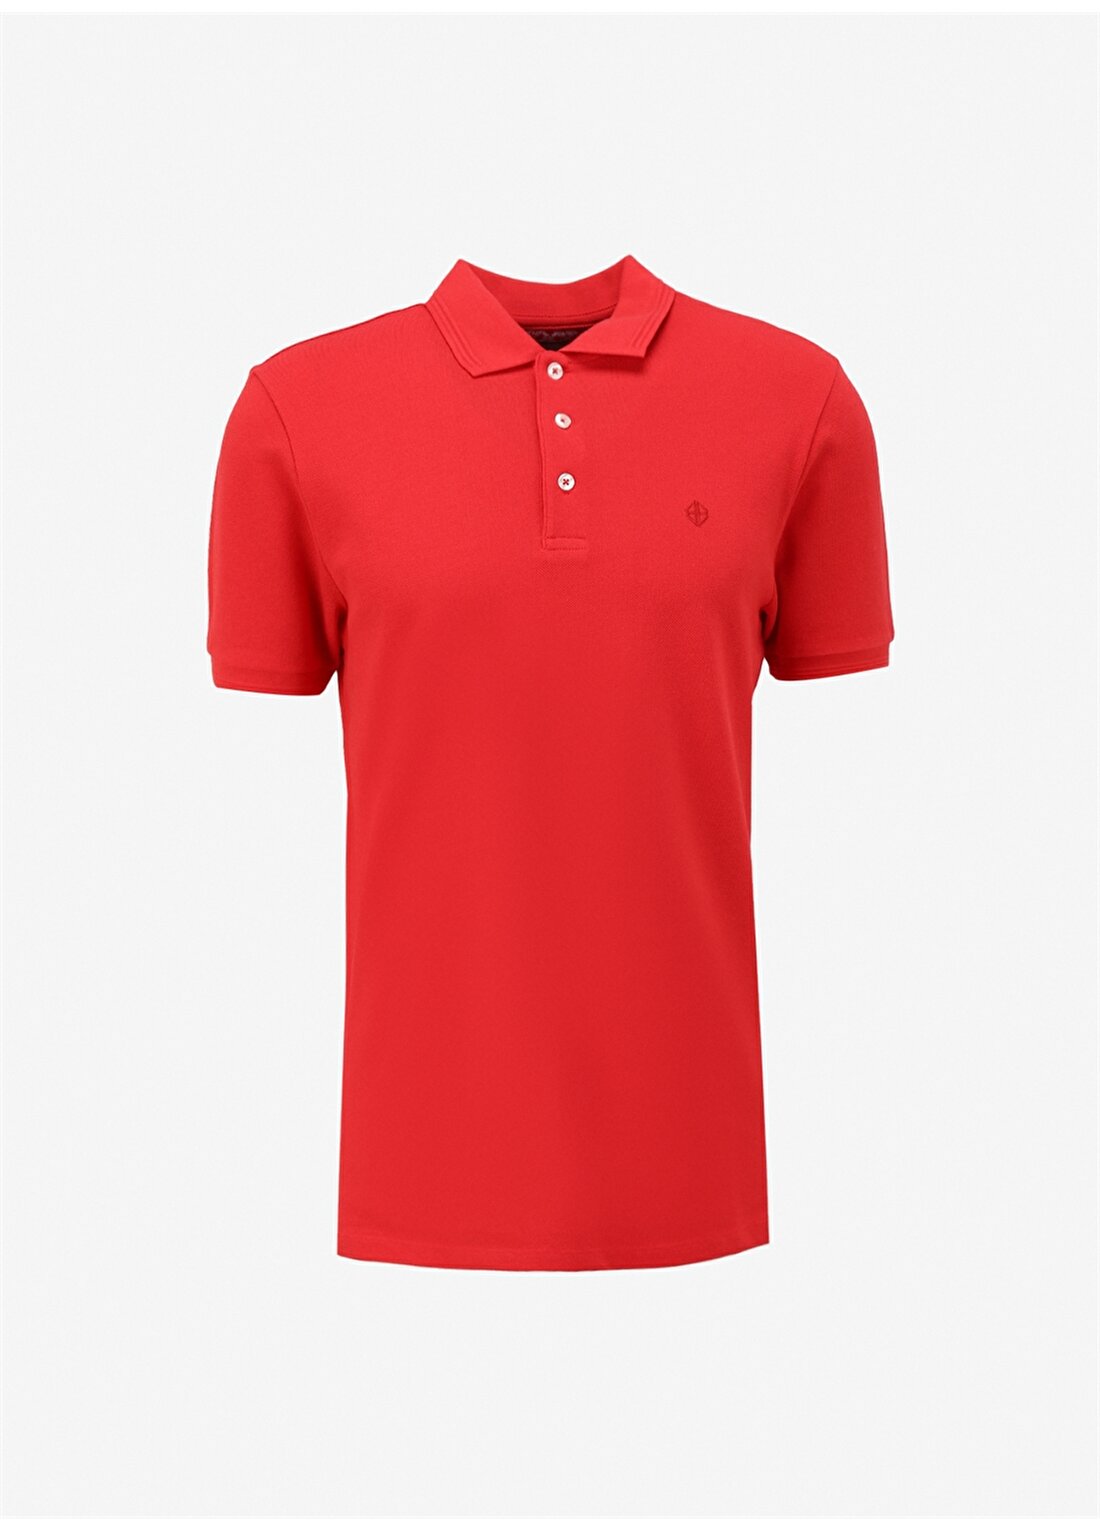 Beymen Business Kırmızı Erkek Polo T-Shirt 4B4800000001